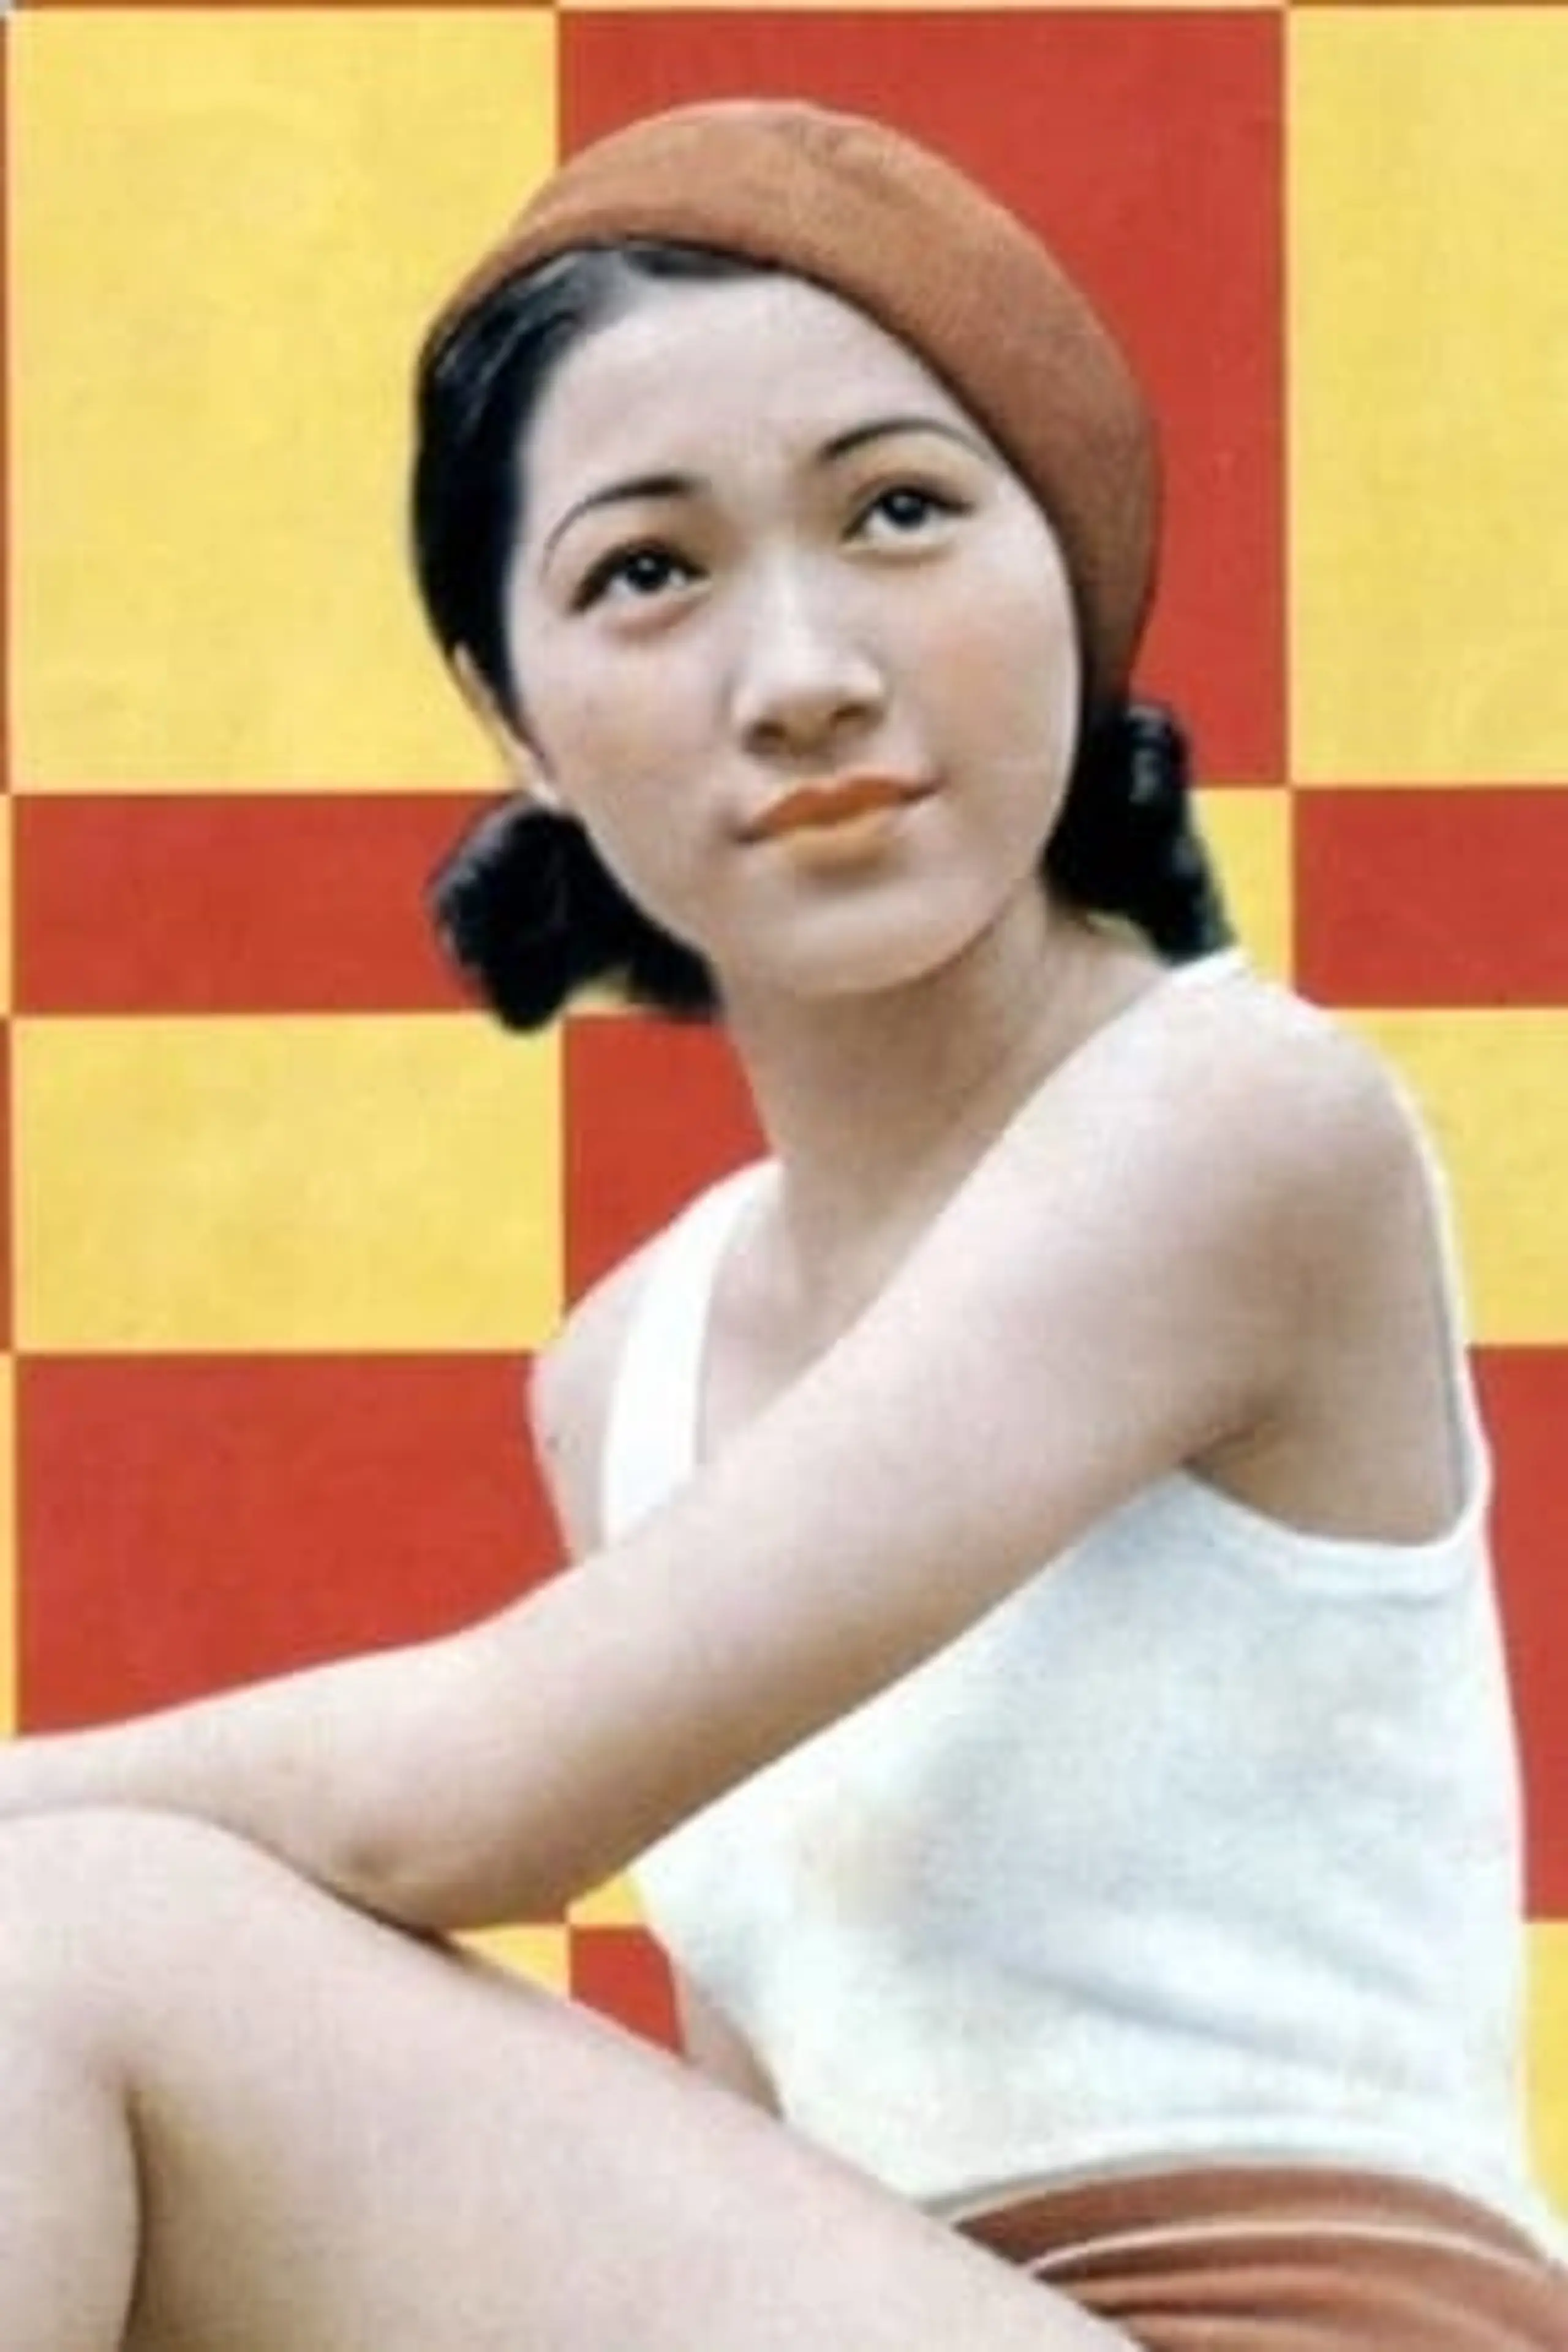 Sumiko Mizukubo